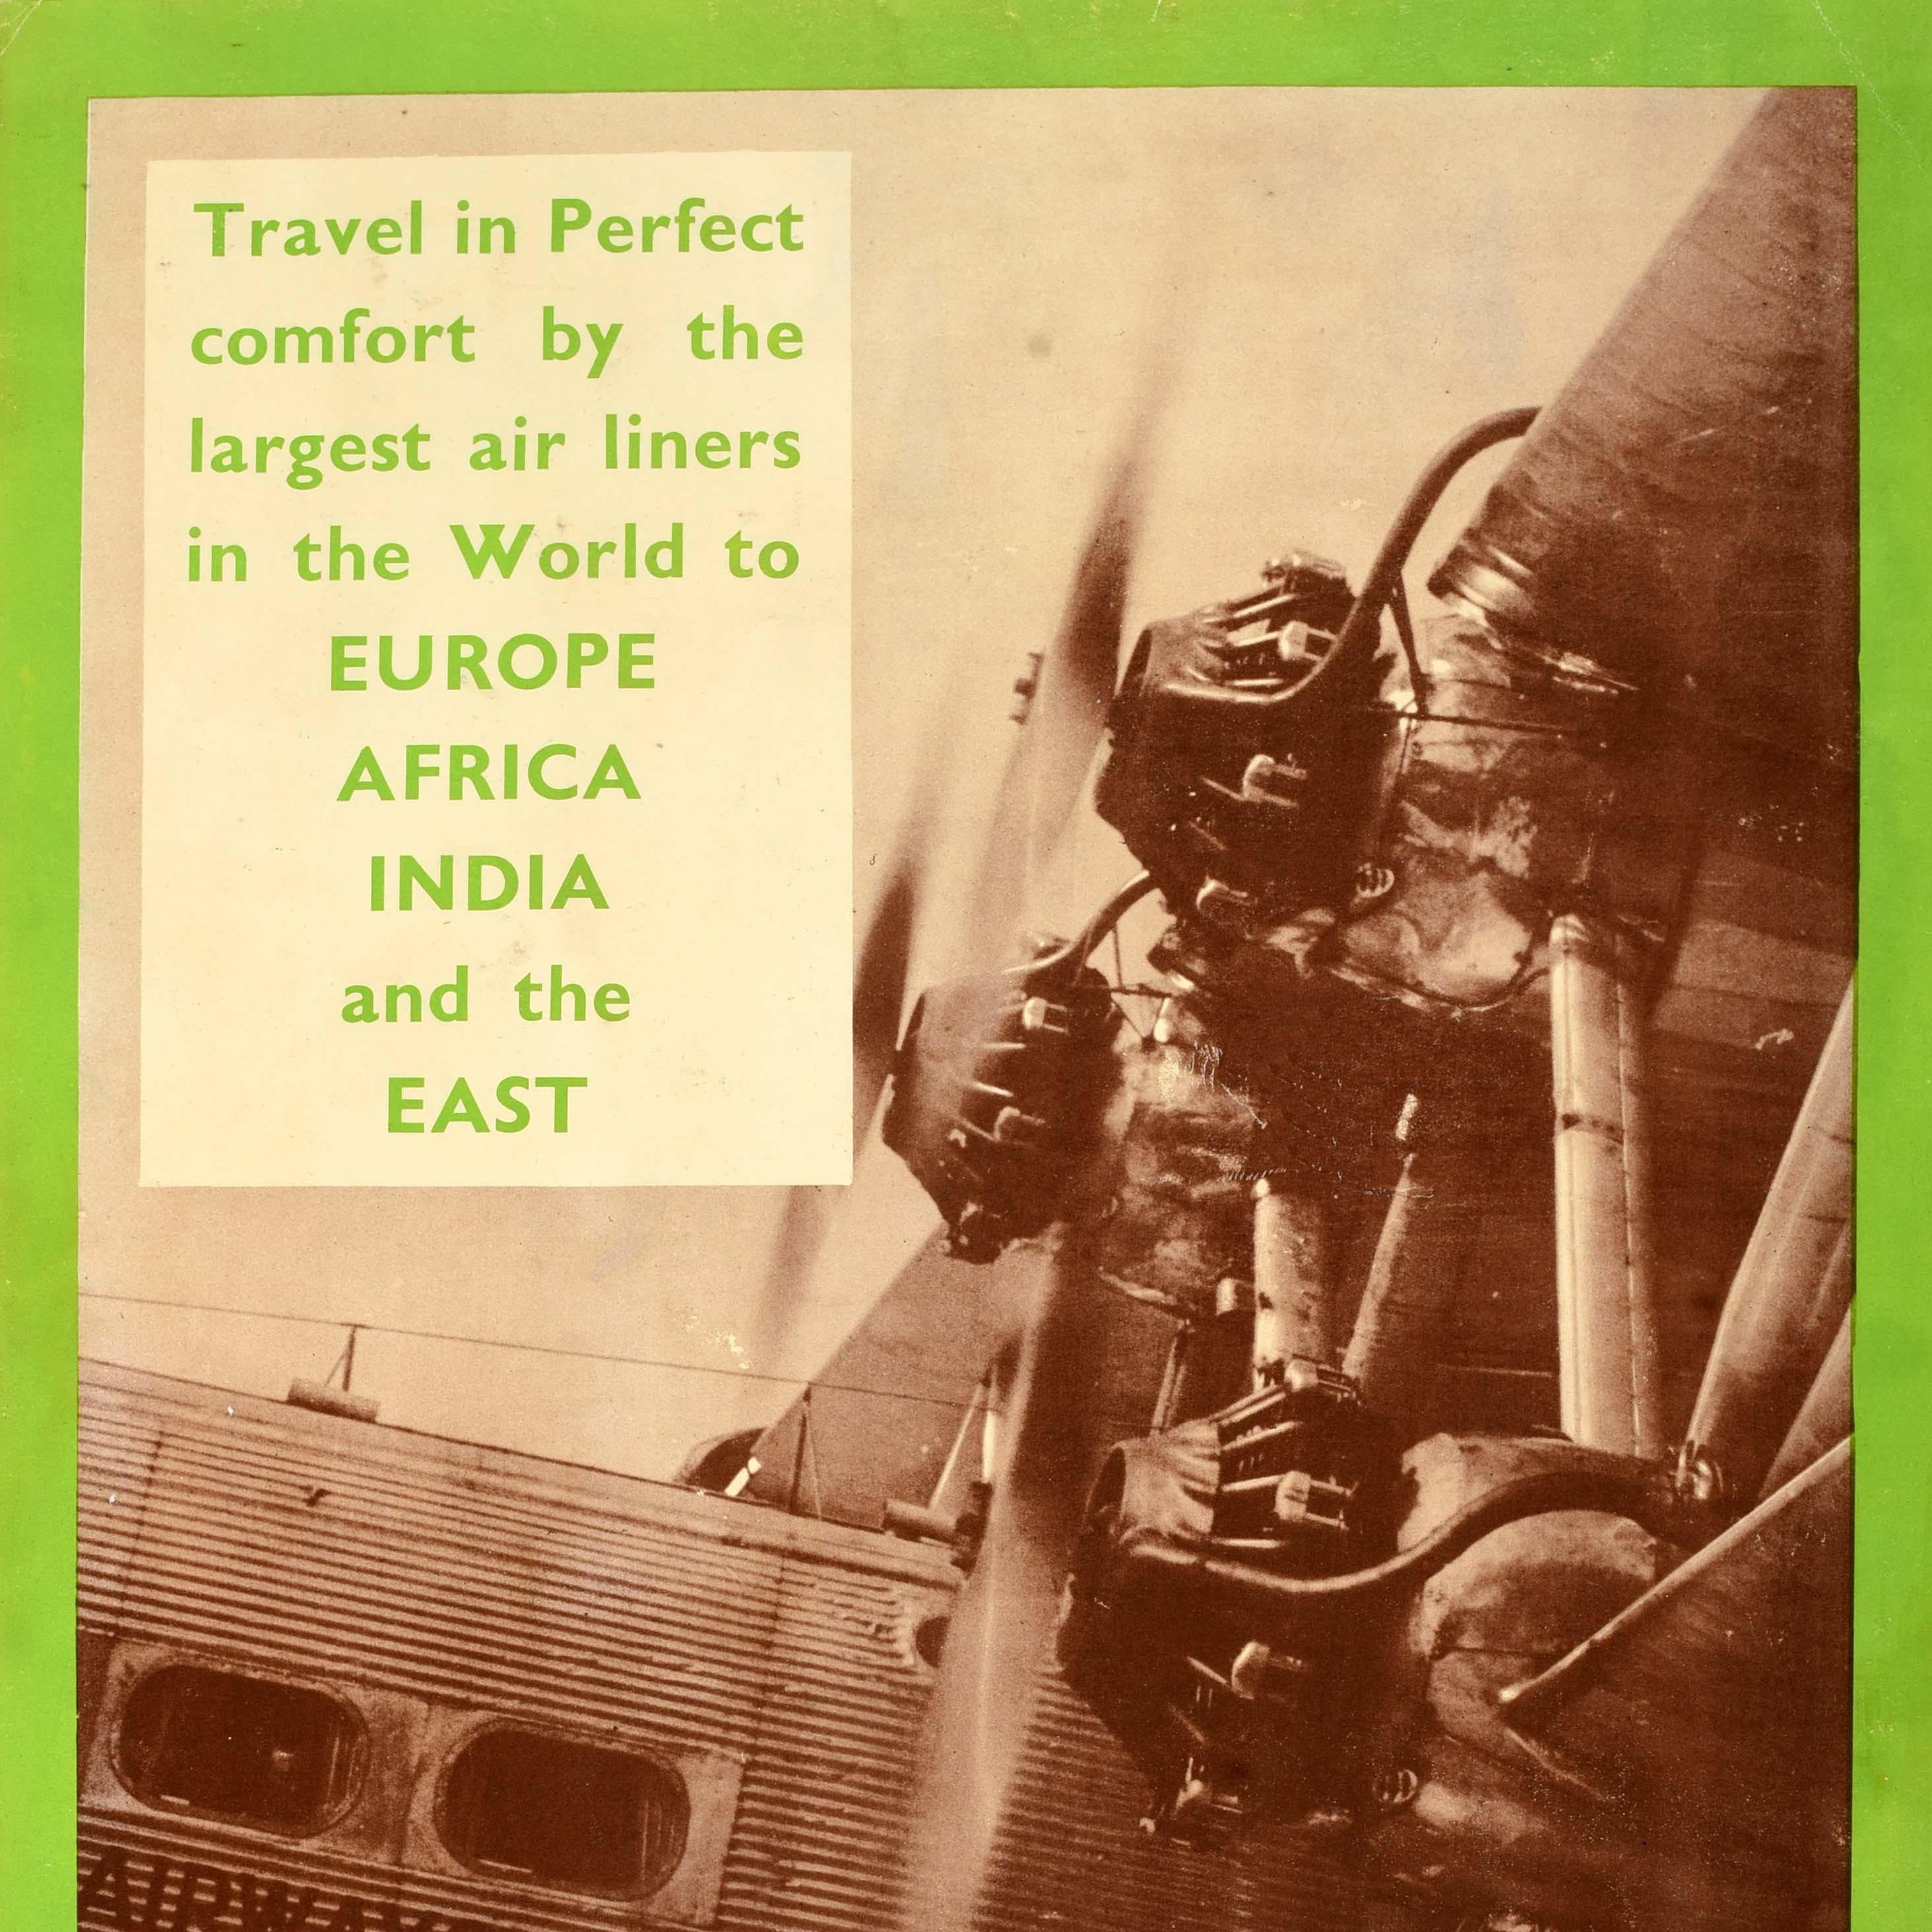 Affiche publicitaire originale - Imperial Airways The British Air Line Voyagez dans un confort parfait sur les plus grandes lignes aériennes du monde vers l'Europe, l'Afrique, l'Inde et l'Orient. Cette affiche présente une photographie en tons sépia